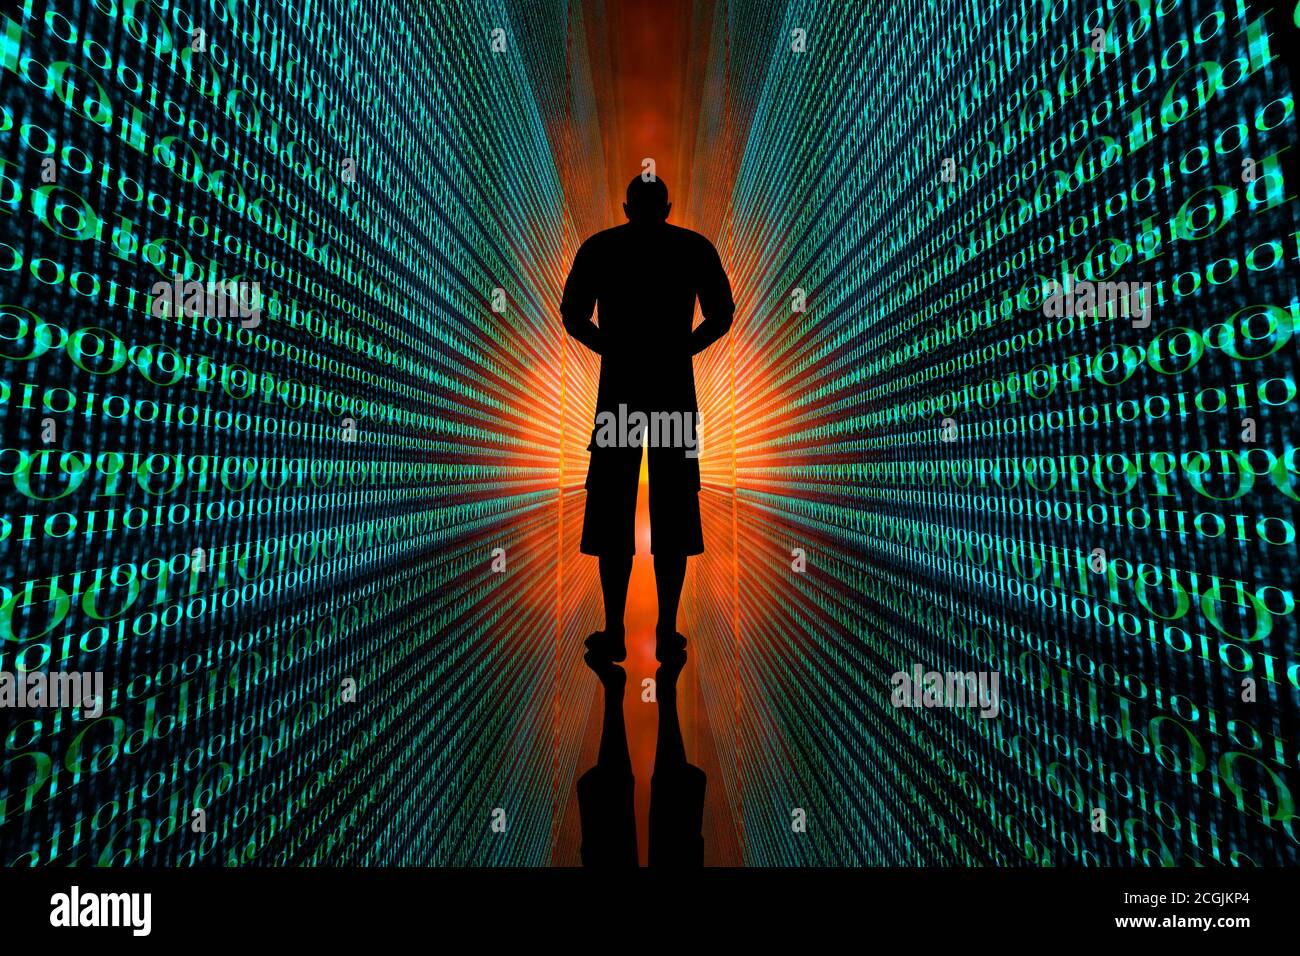 3D-Illustration eines Mannes, der zwischen unendlichen Codezeilen steht, die seine digitale Identität und Datenspuren symbolisieren. Stockfoto